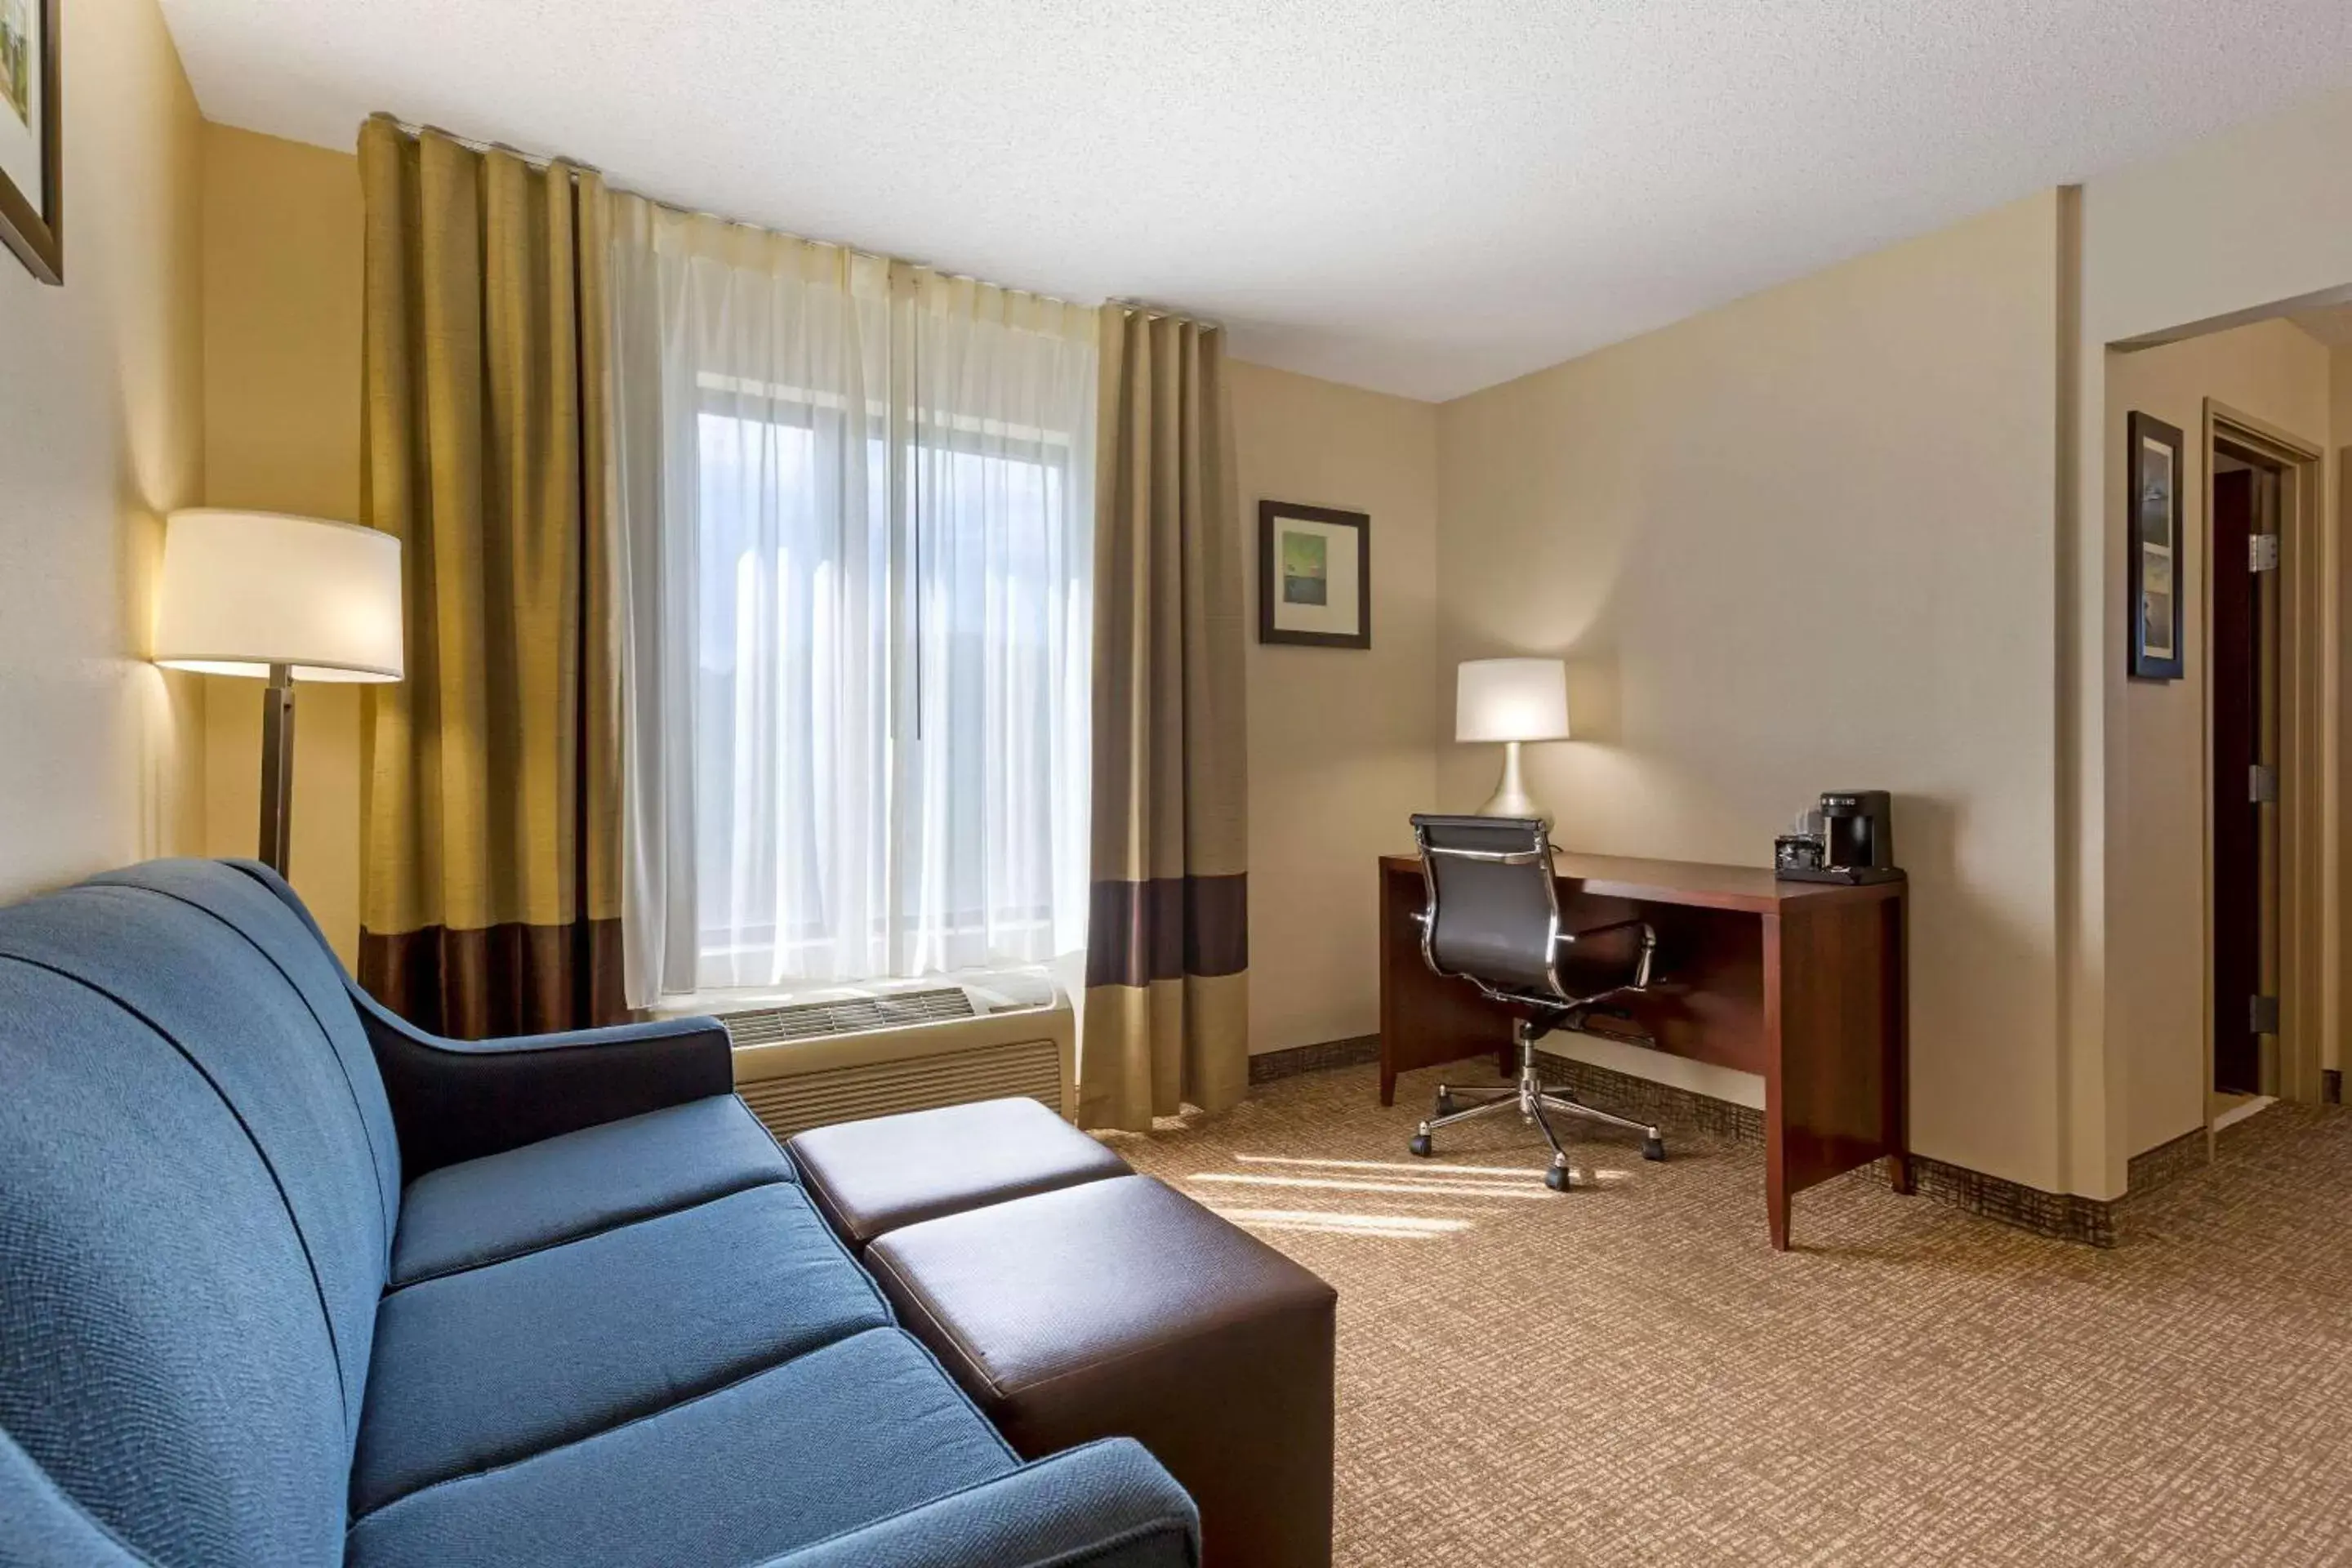 Bedroom, Seating Area in Comfort Inn & Suites Cambridge